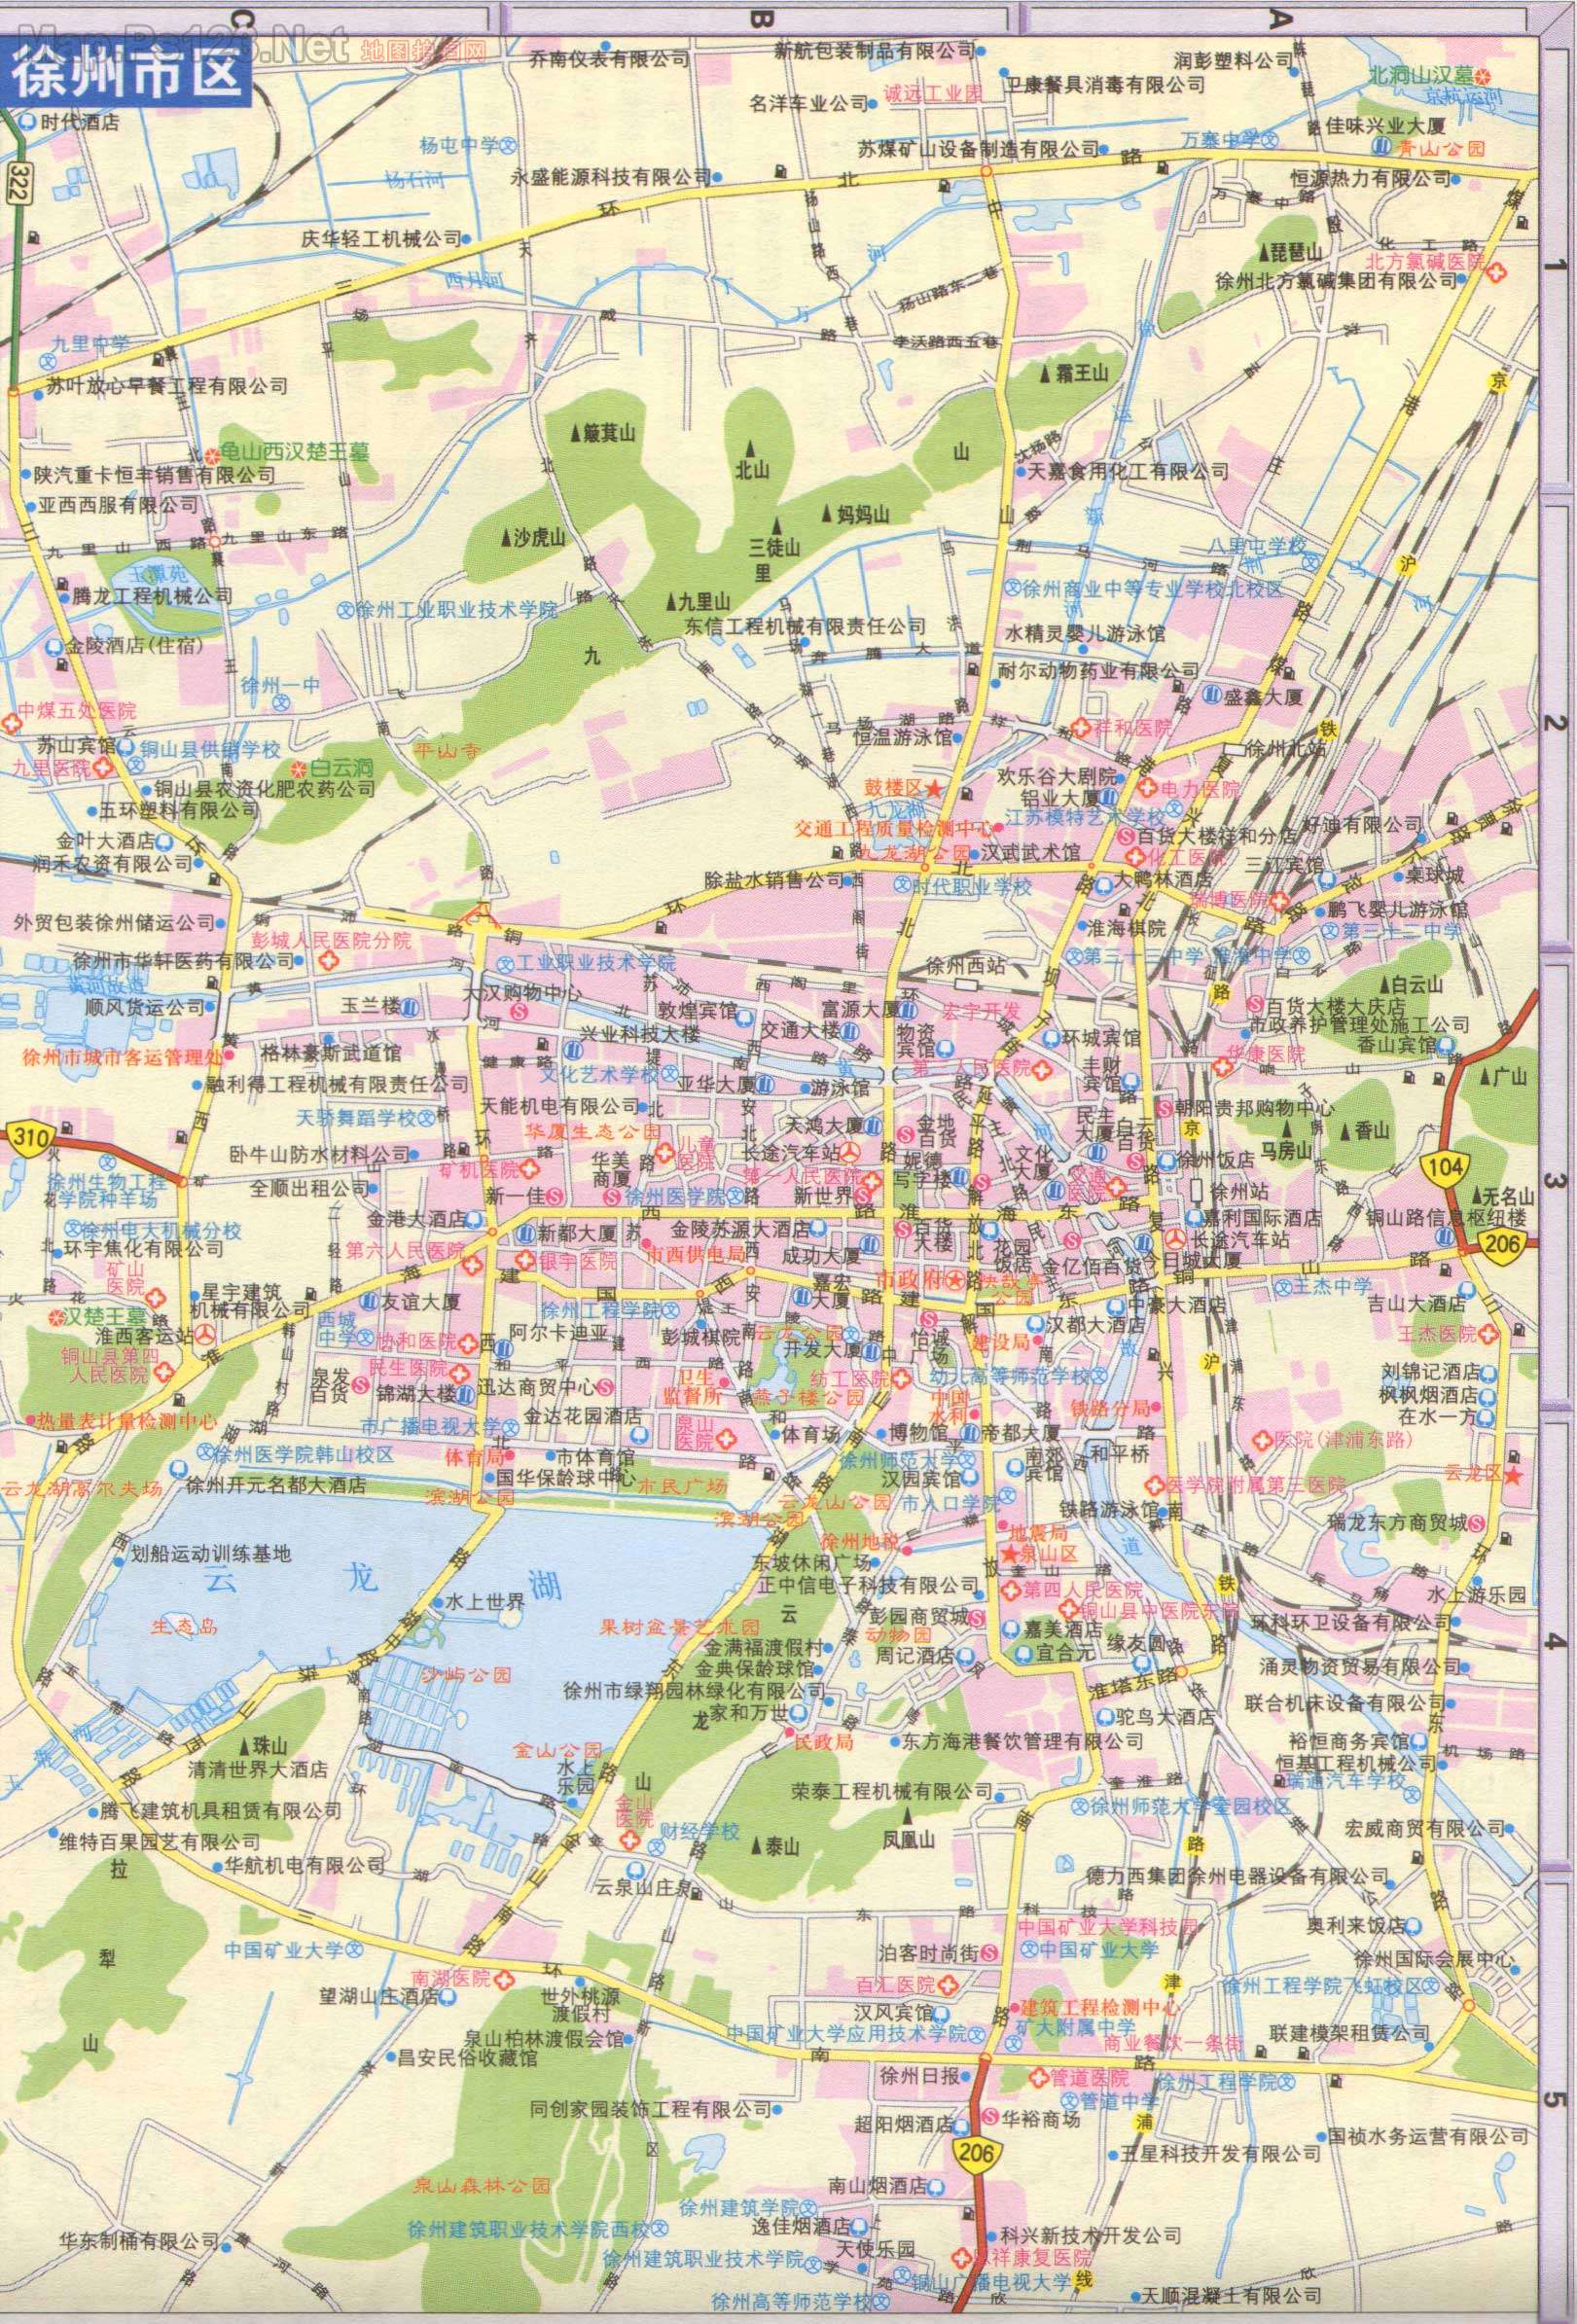 上一幅地图: 徐州市交通地图 | 徐州市 | 下一幅地图: 丰县地图_沛县图片